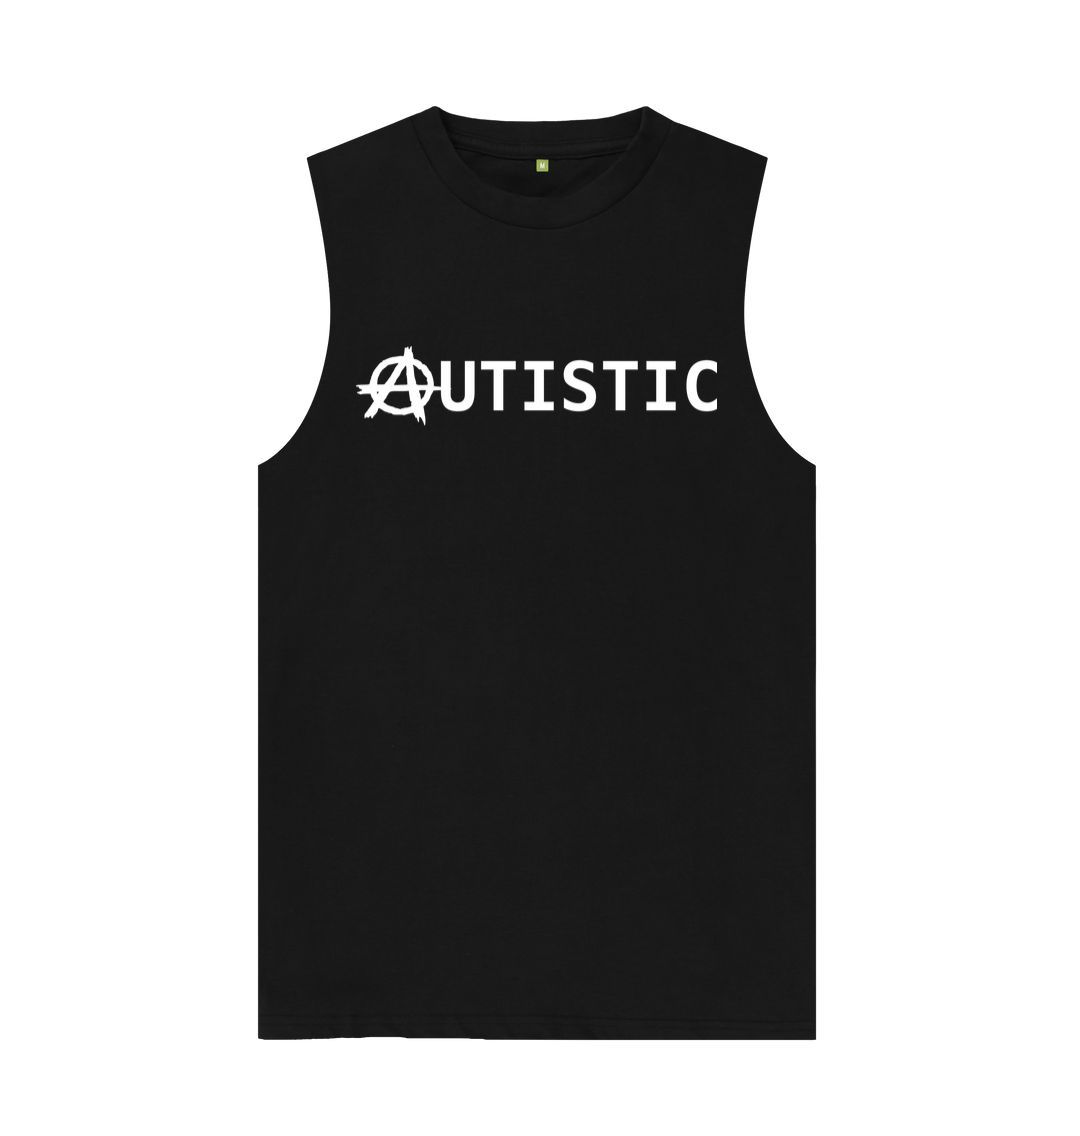 Black Autistic Anarchy unisex vest